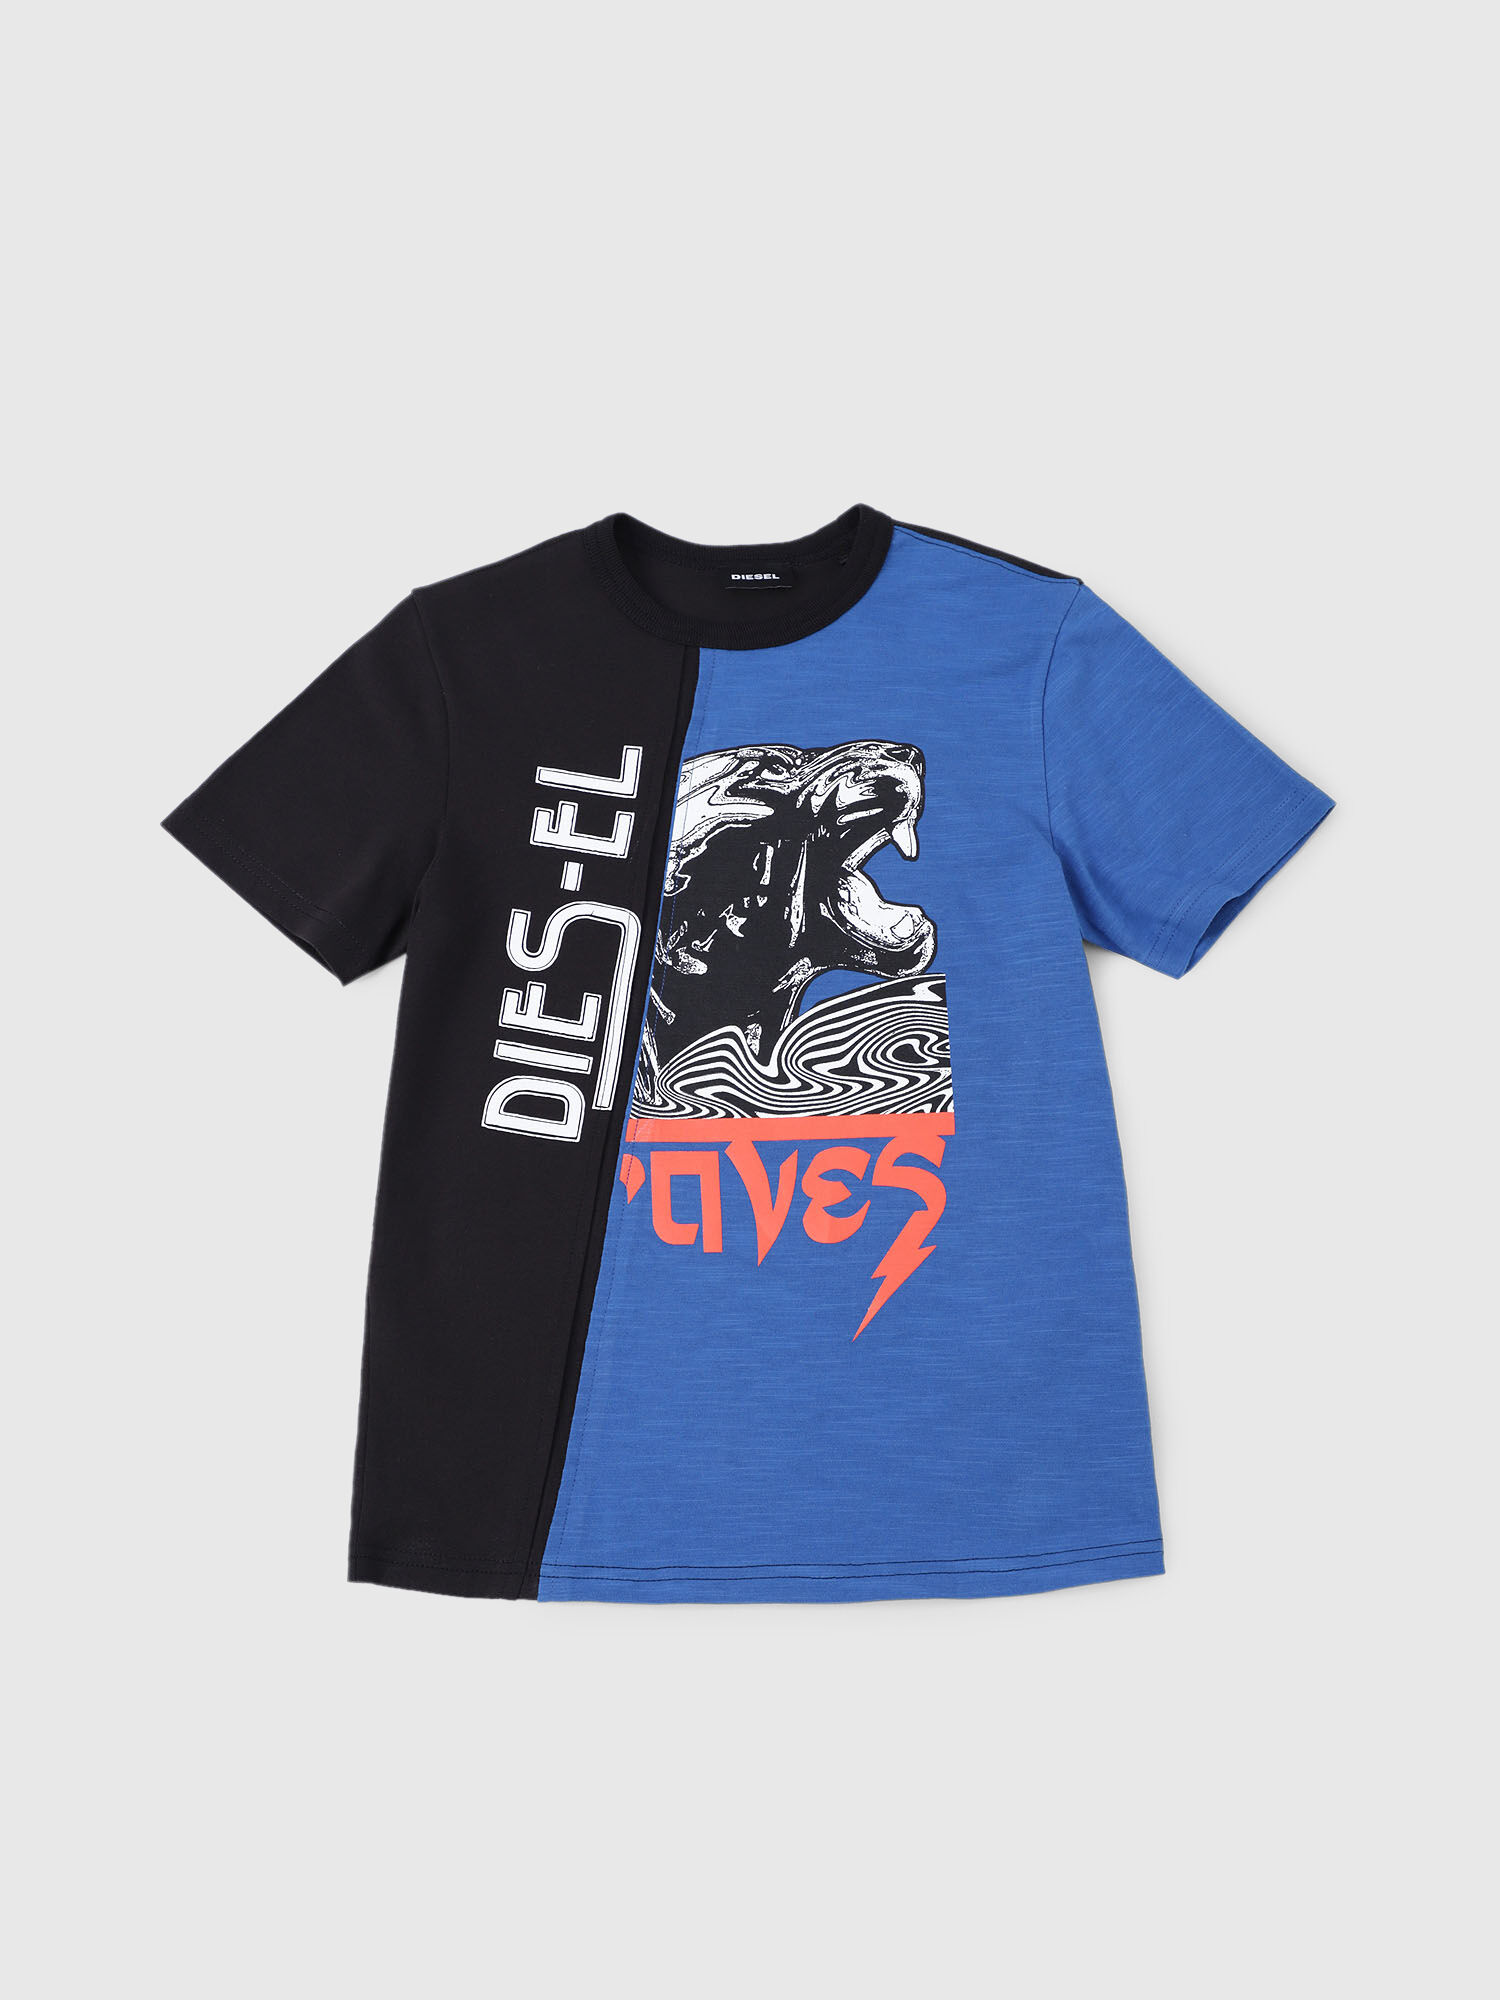 Diesel - TJUSTCUT, Black/Blue - Image 1